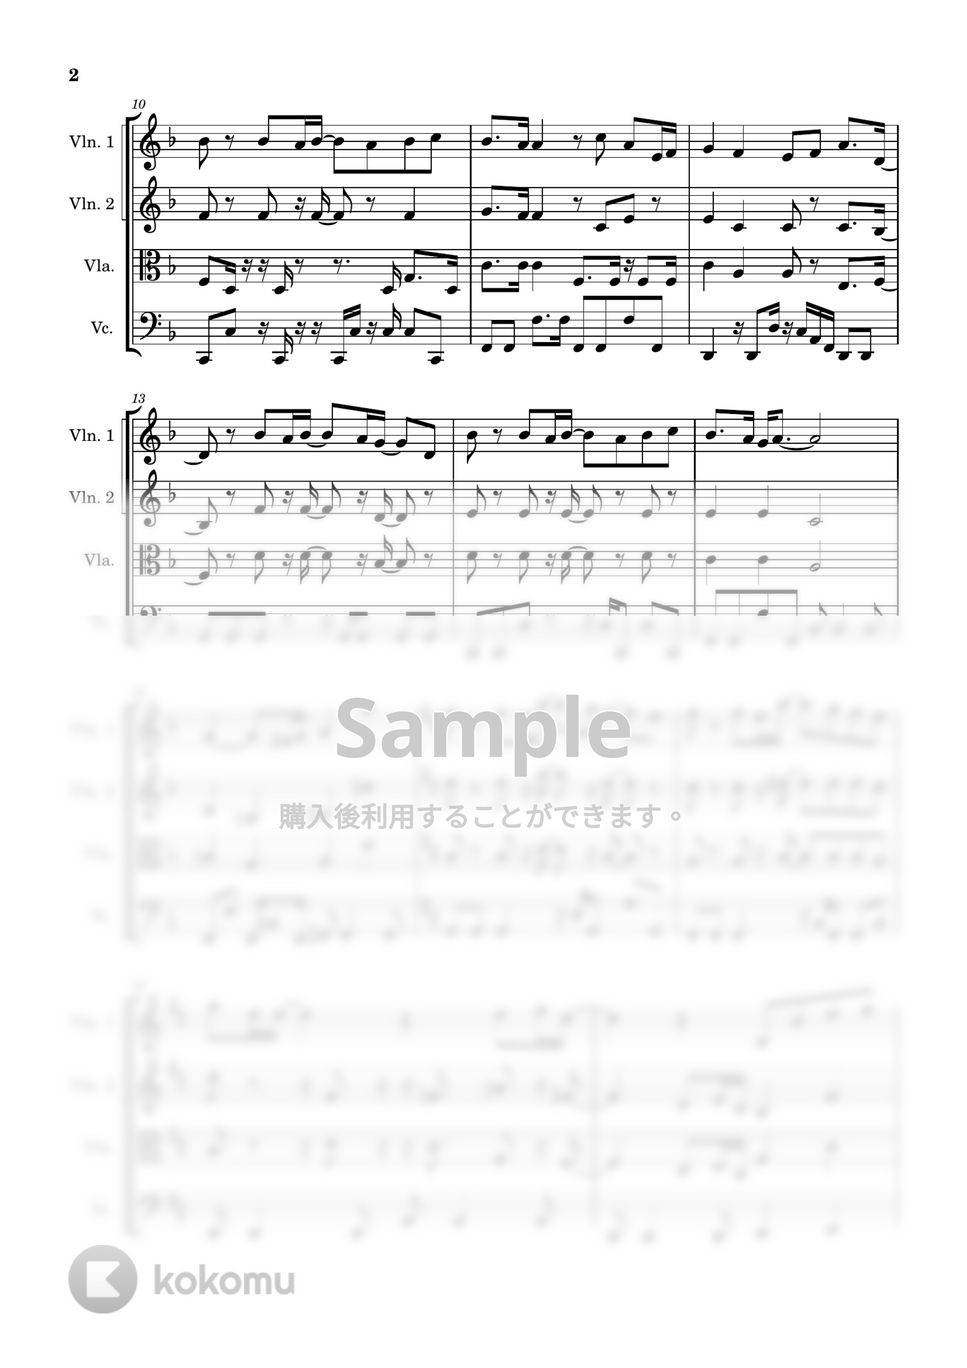 藤井風 - きらり (弦楽四重奏) by Cellotto